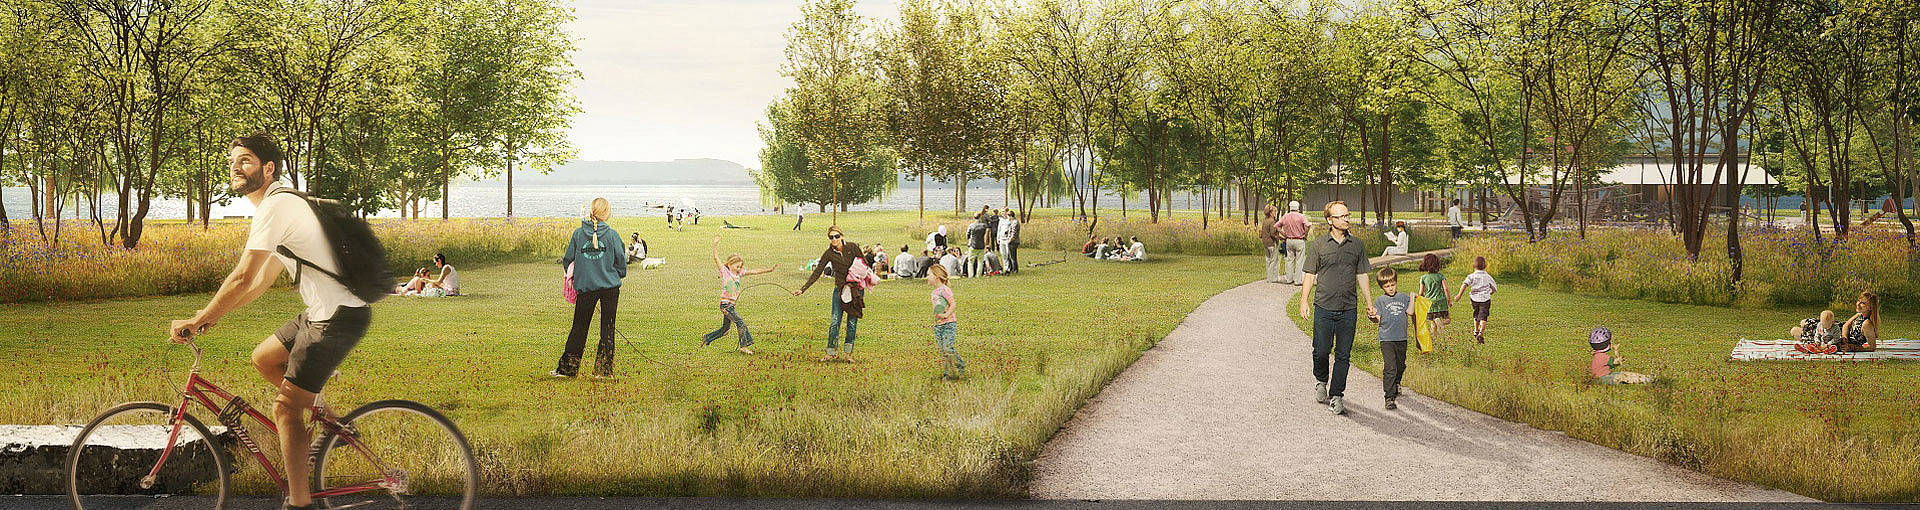 Le futur parc sera largement arborisé